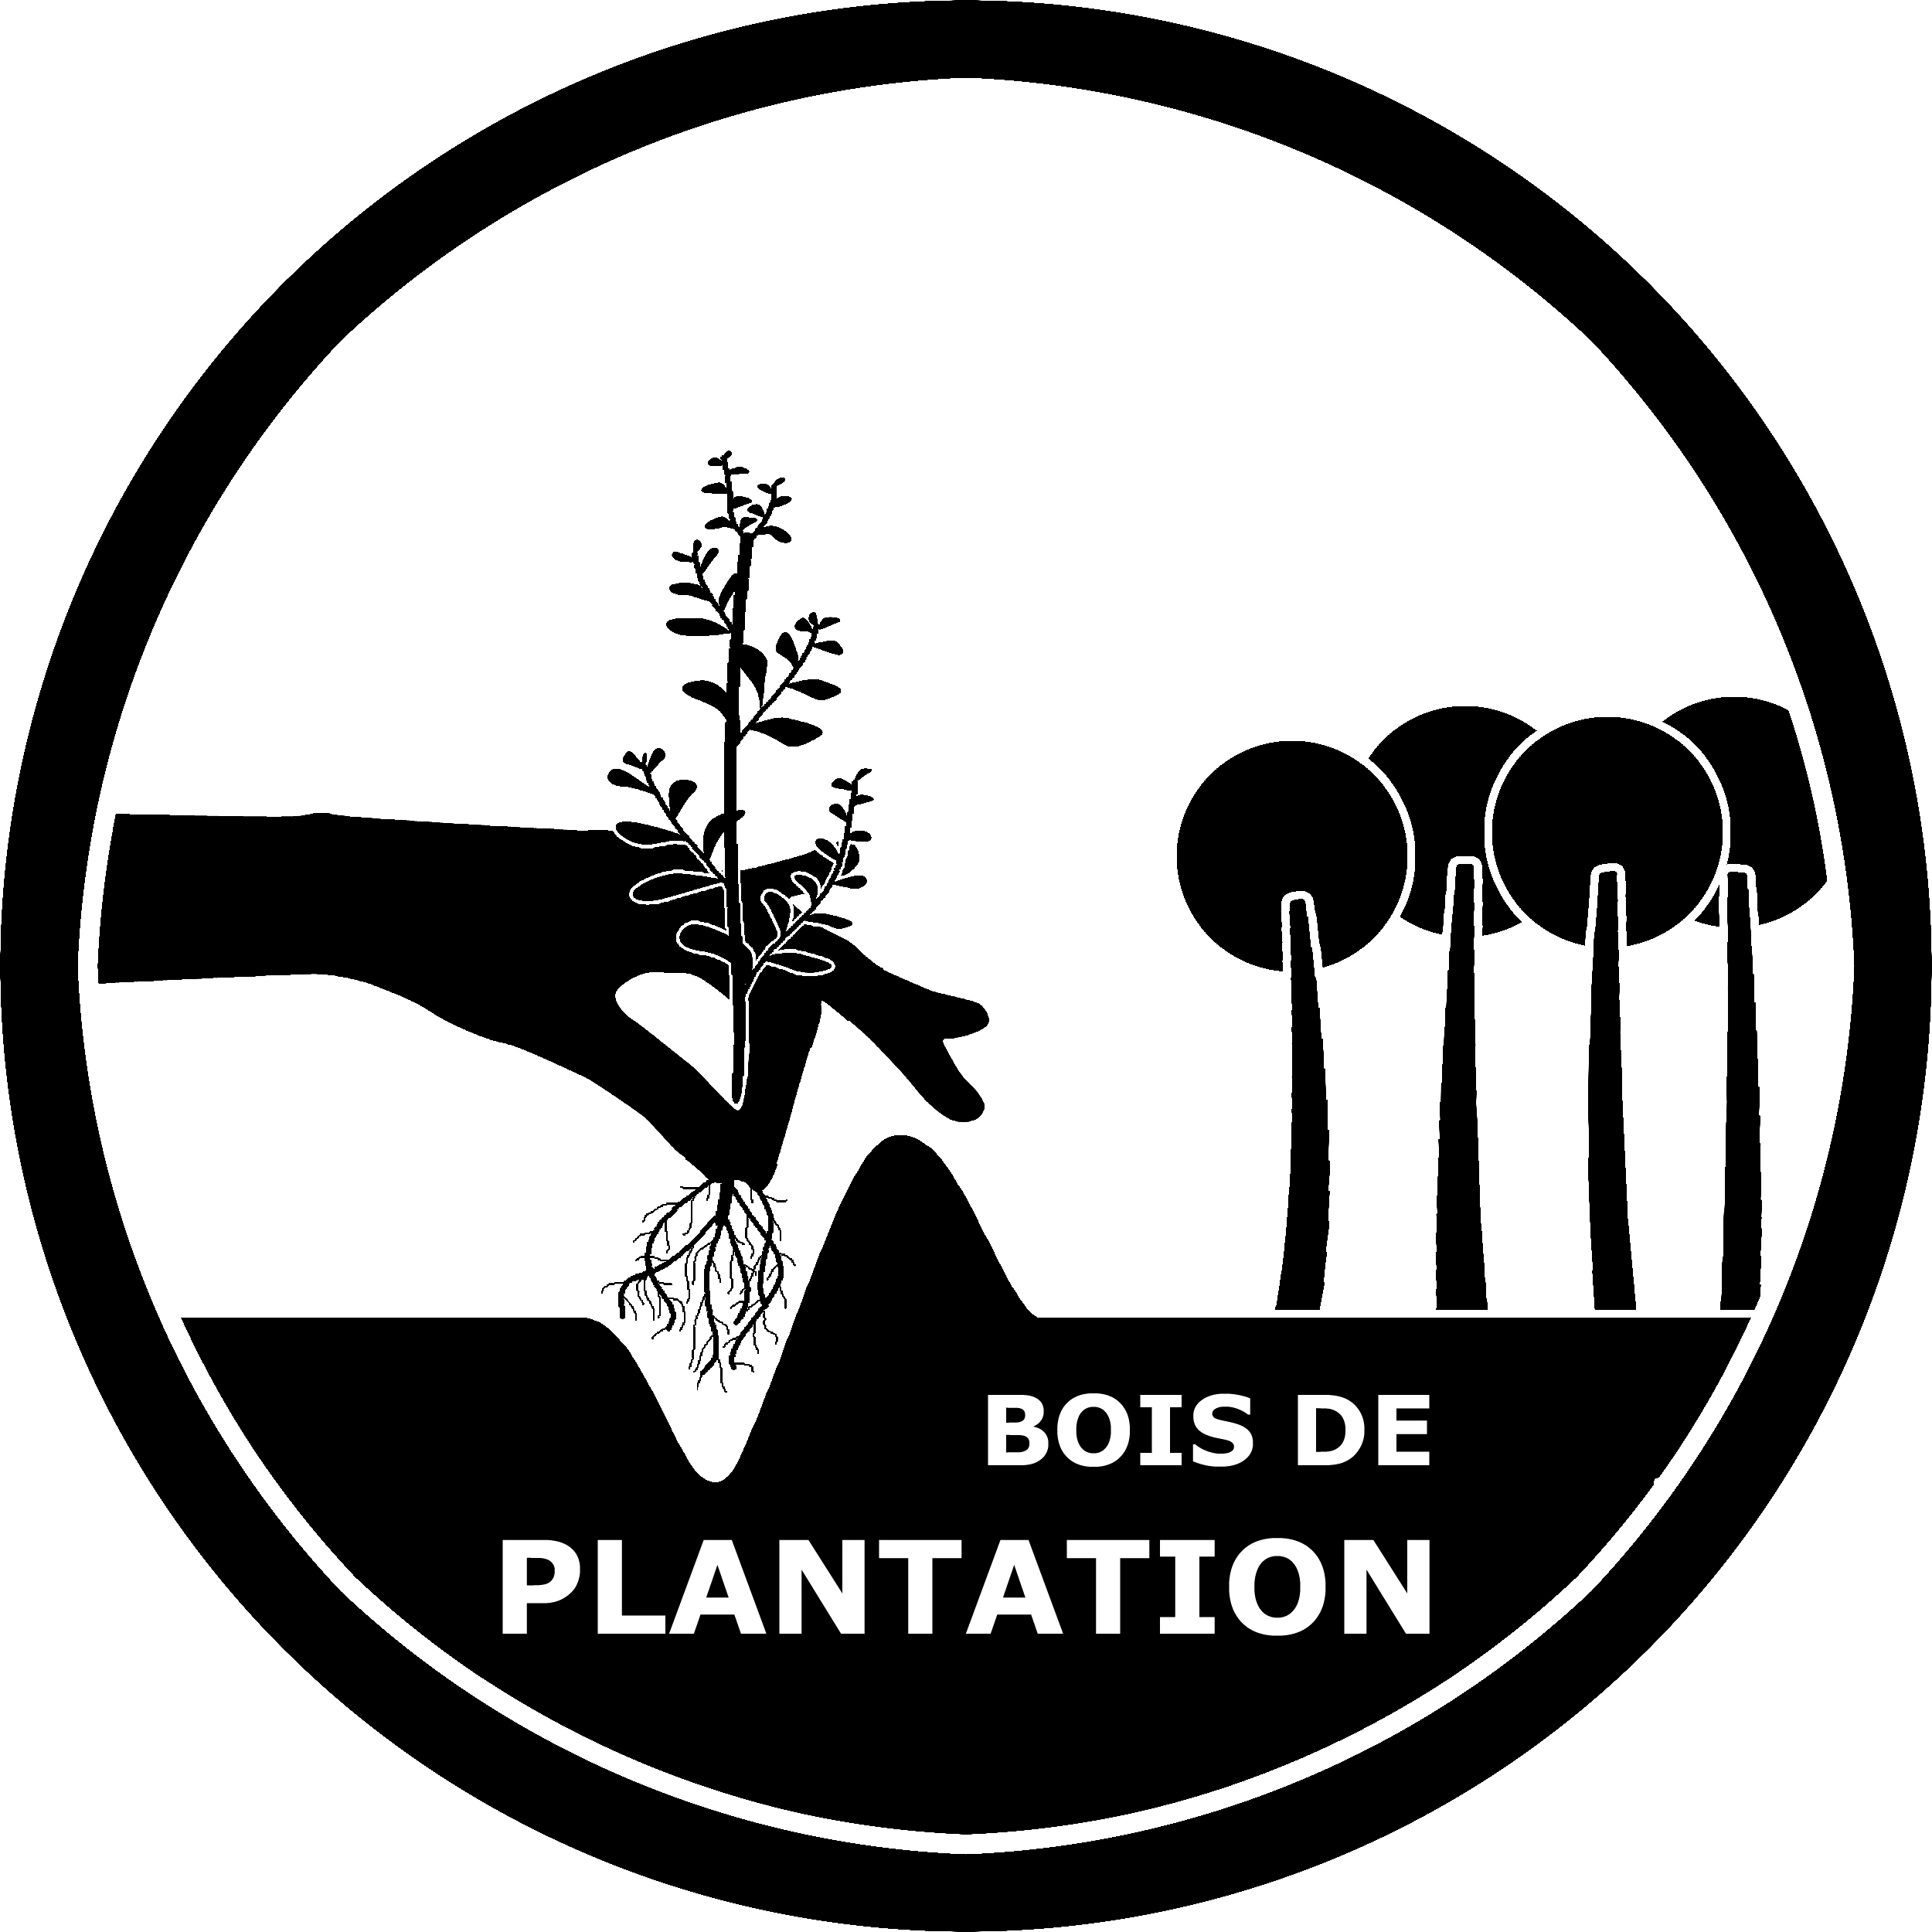 Bois de plantation